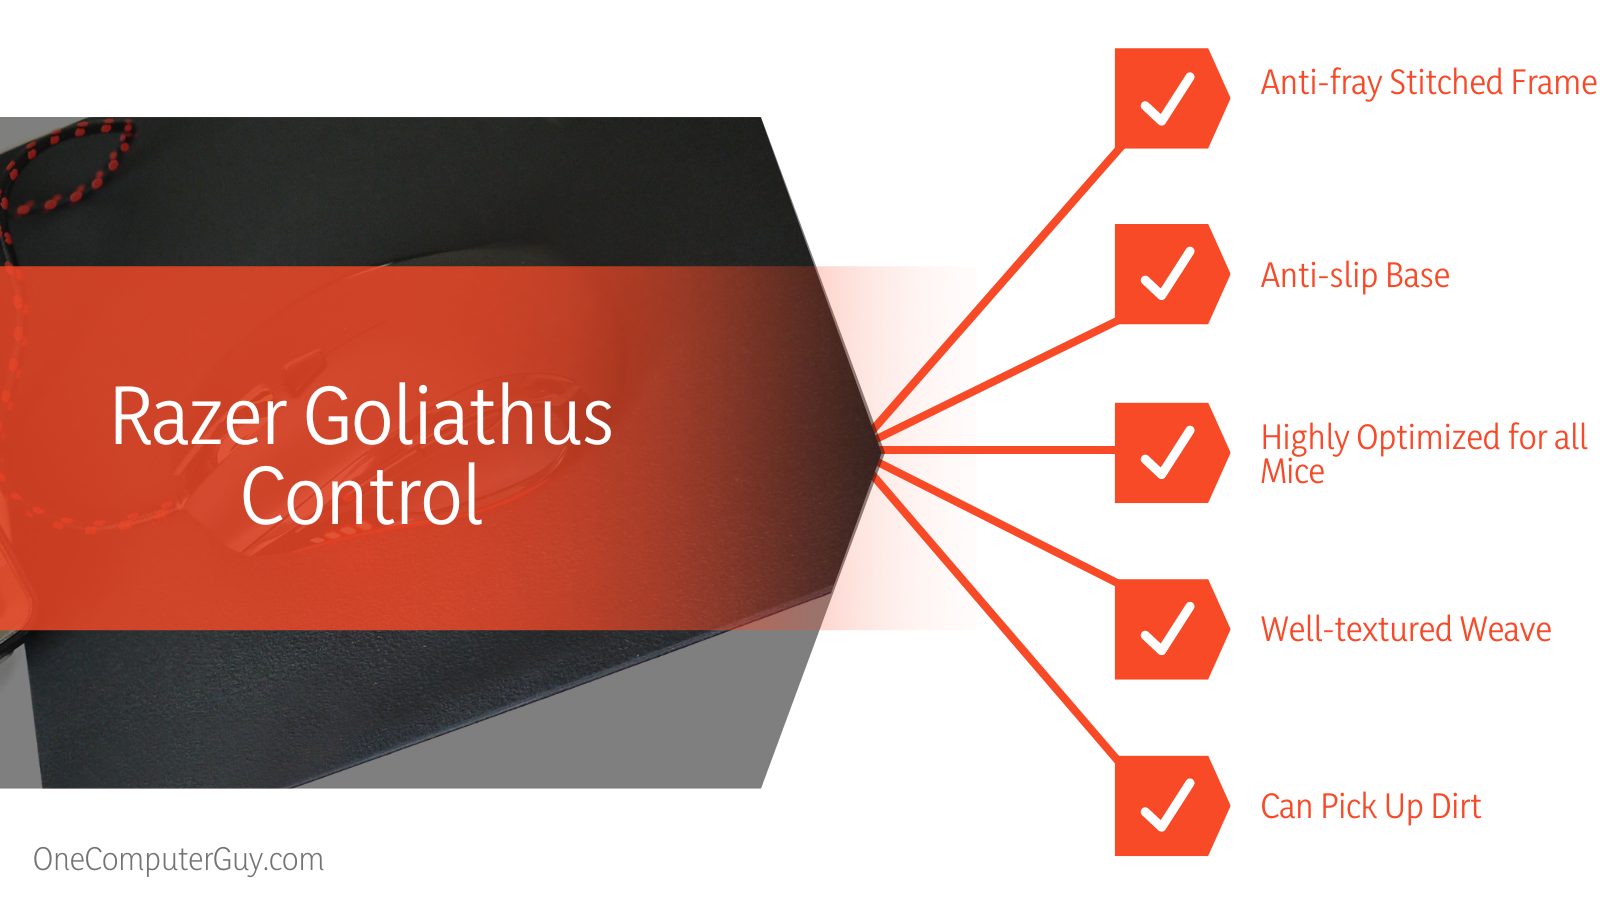 Razer Goliathus Control Specifications